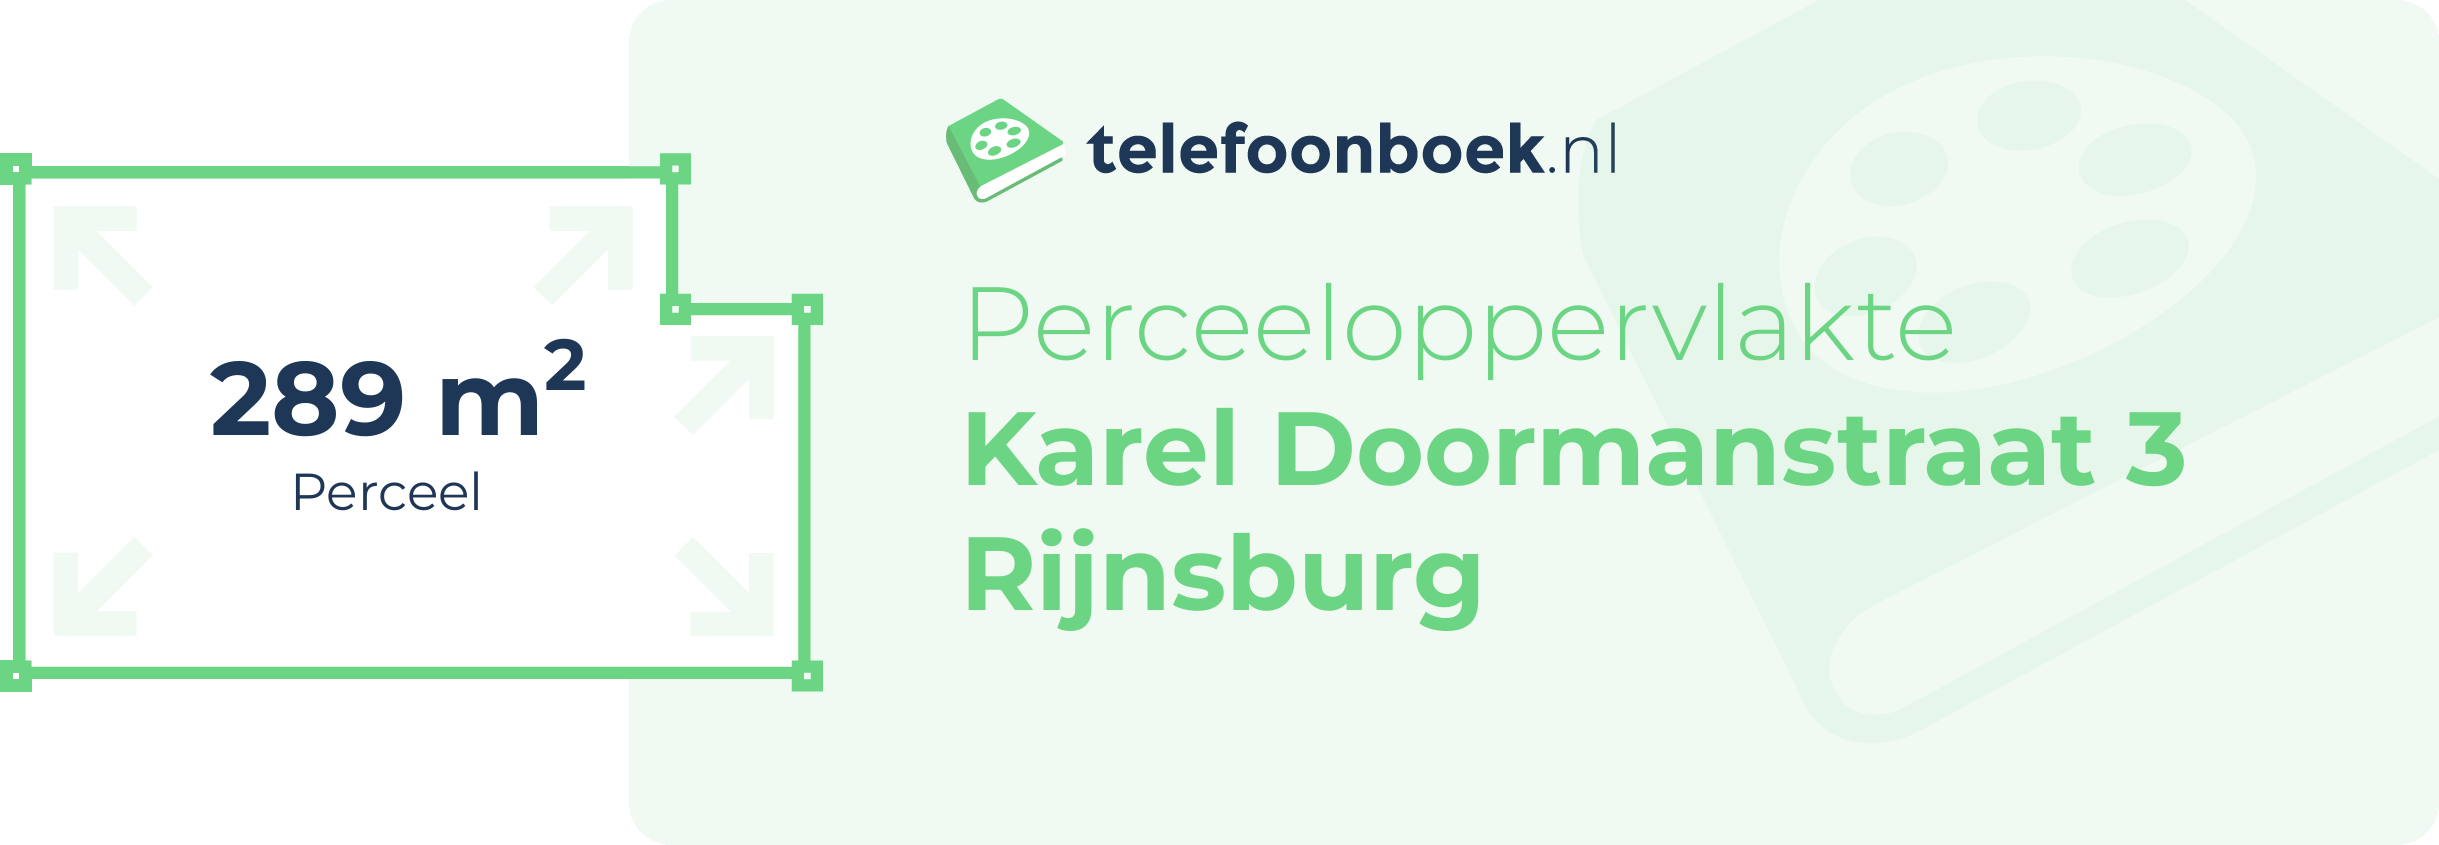 Perceeloppervlakte Karel Doormanstraat 3 Rijnsburg